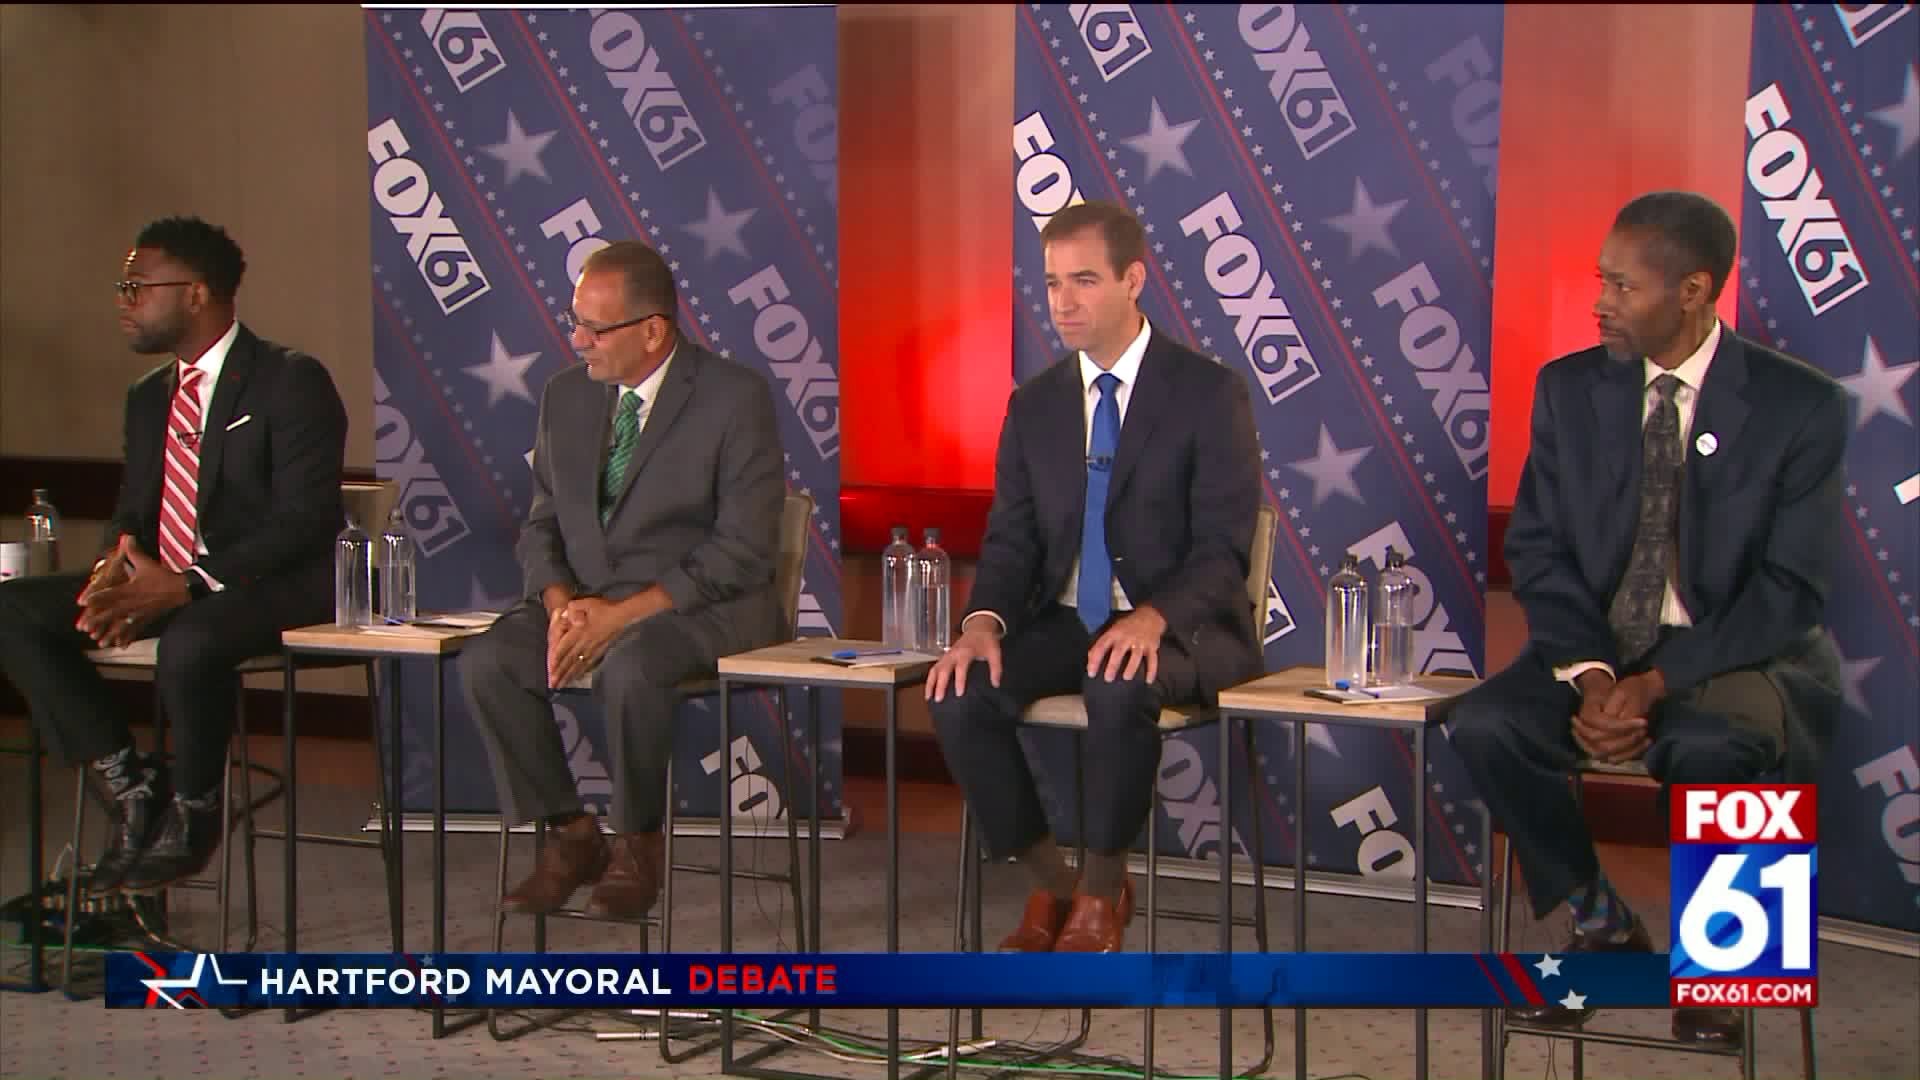 Hartford Mayoral Debate: Lightning Round